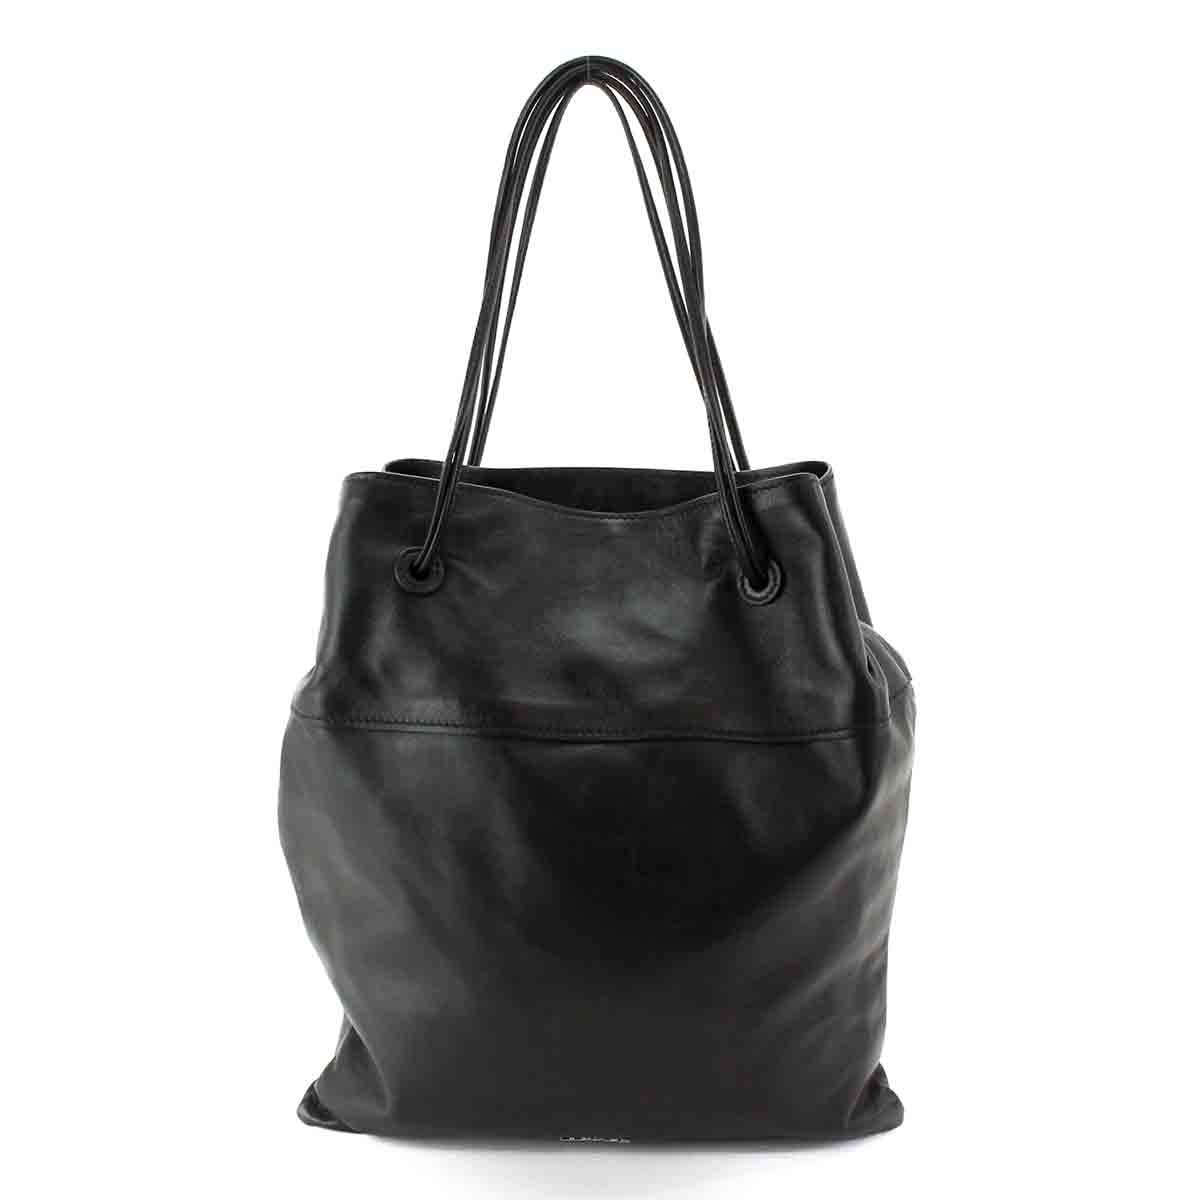 Prada Bandoliera Tessuto Nylon Soft Calf Trim Black Crossbody Bag